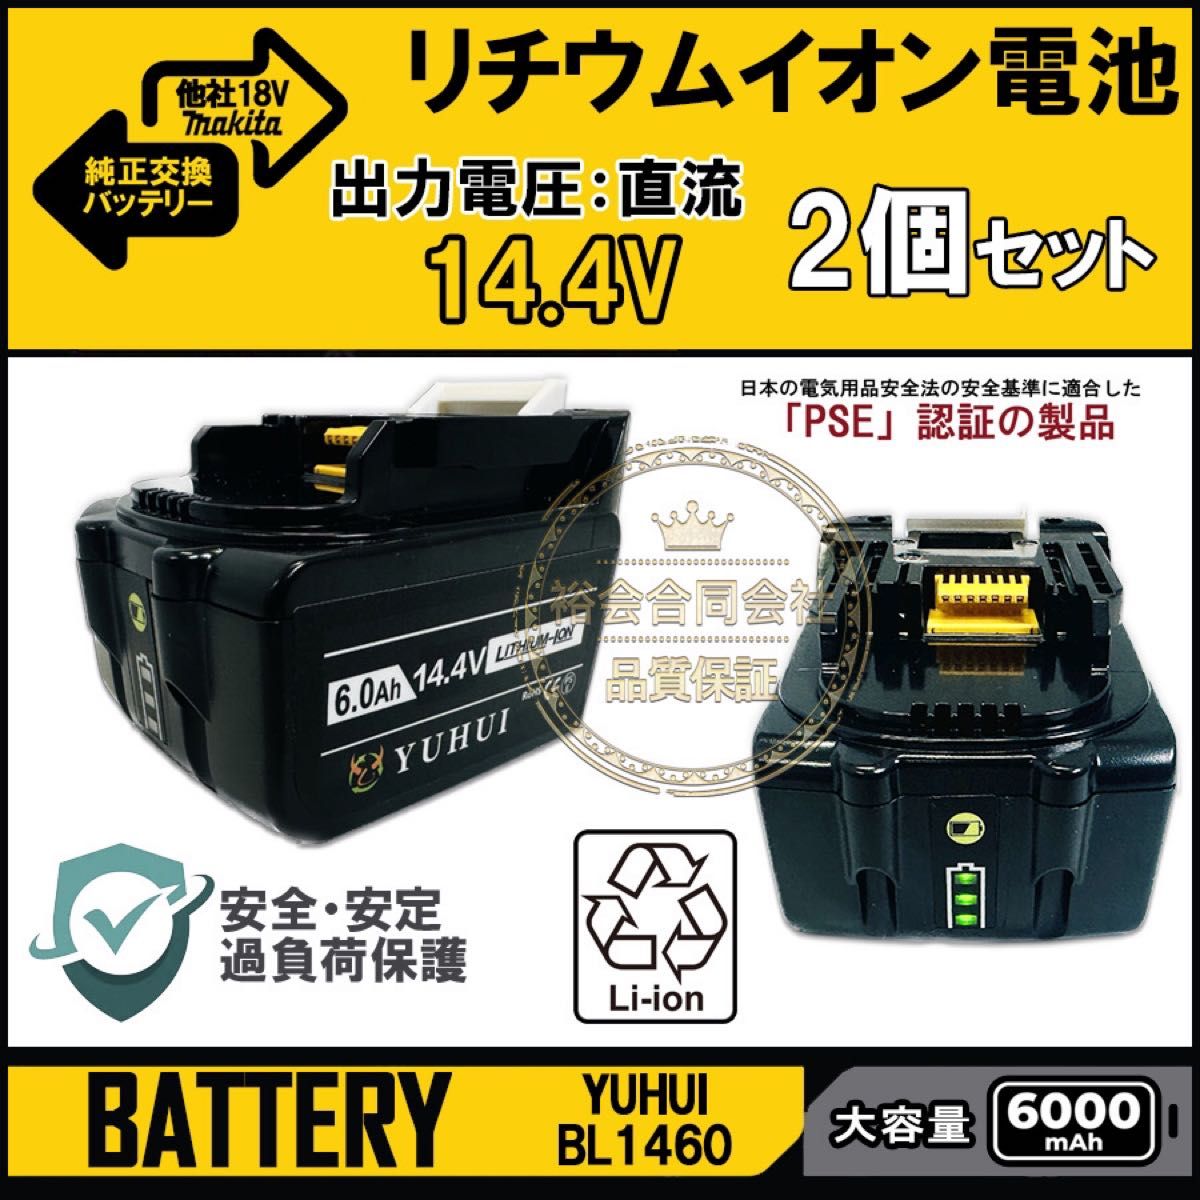 マキタ 14.4v バッテリー 2個セットBL1460 bl1460b 互換 バッテリー 14.4v 6Ah